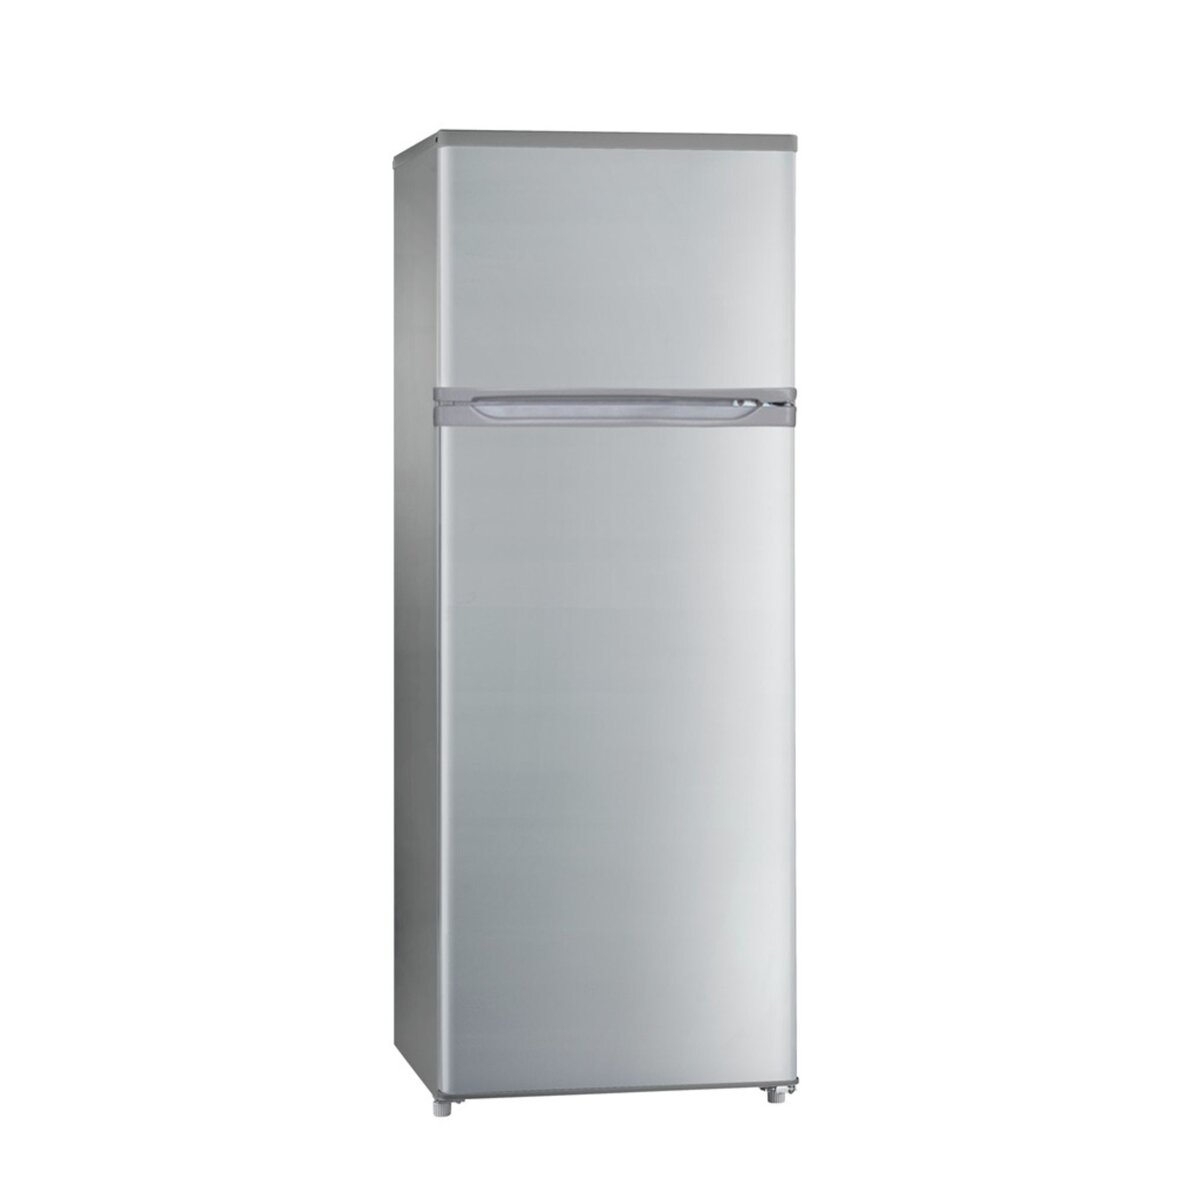 CURTISS Réfrigérateur 2 portes QDP225GPLS - 215 L, Froid statique